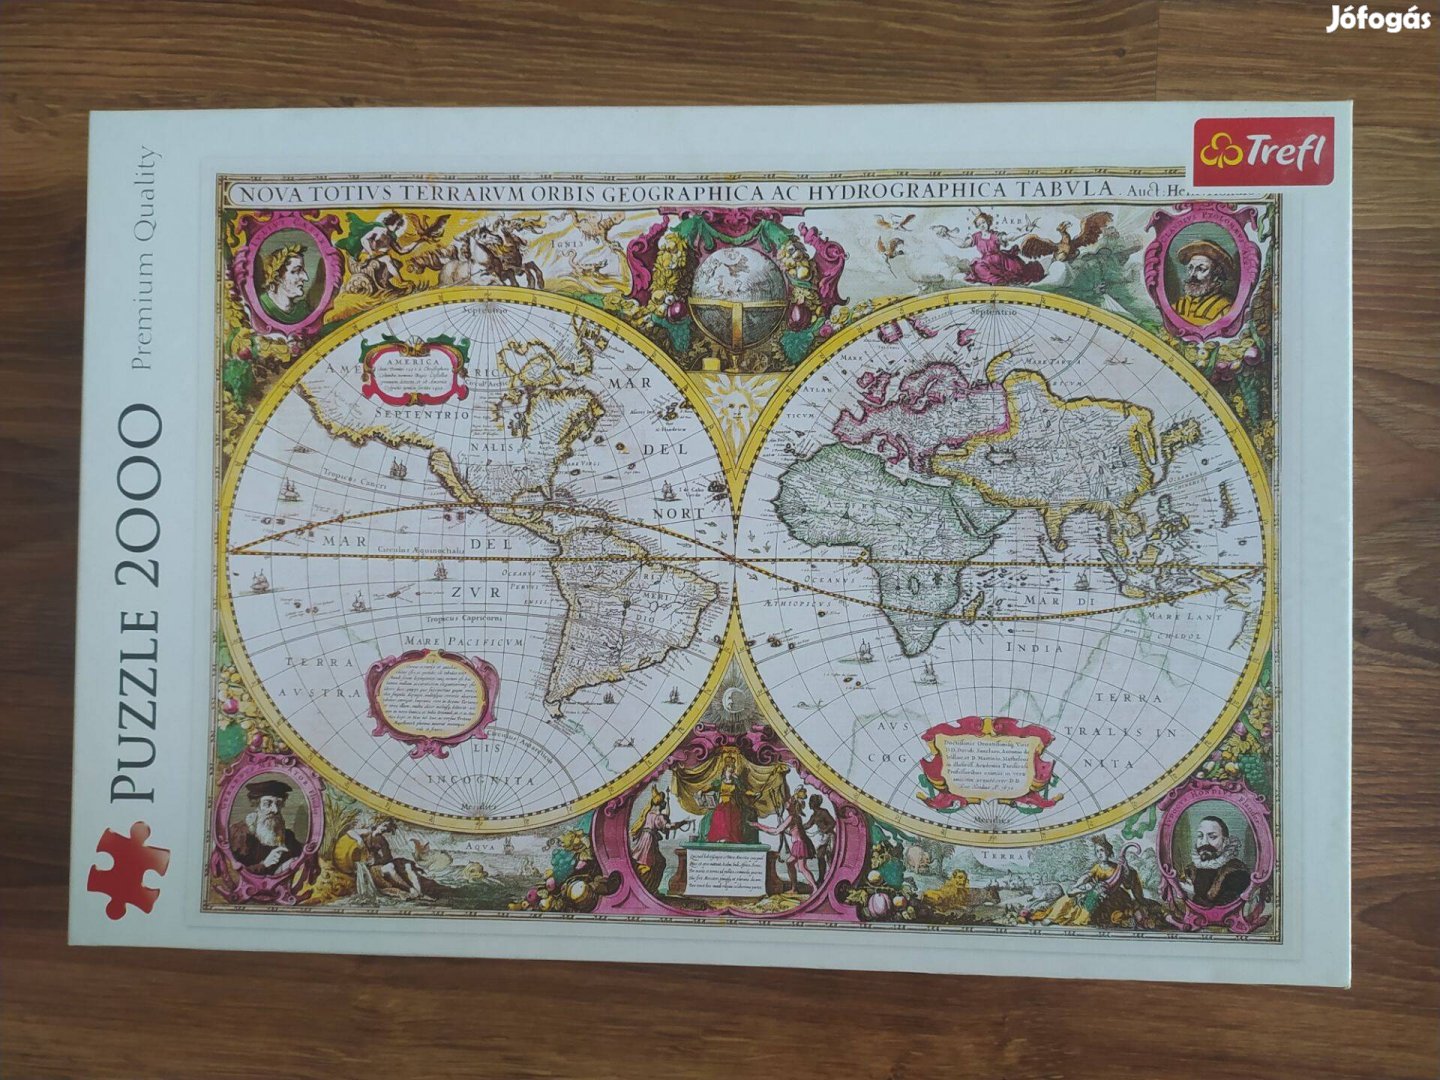 Trefl A világ történelmi térképe (1630) 2000 db-os puzzle